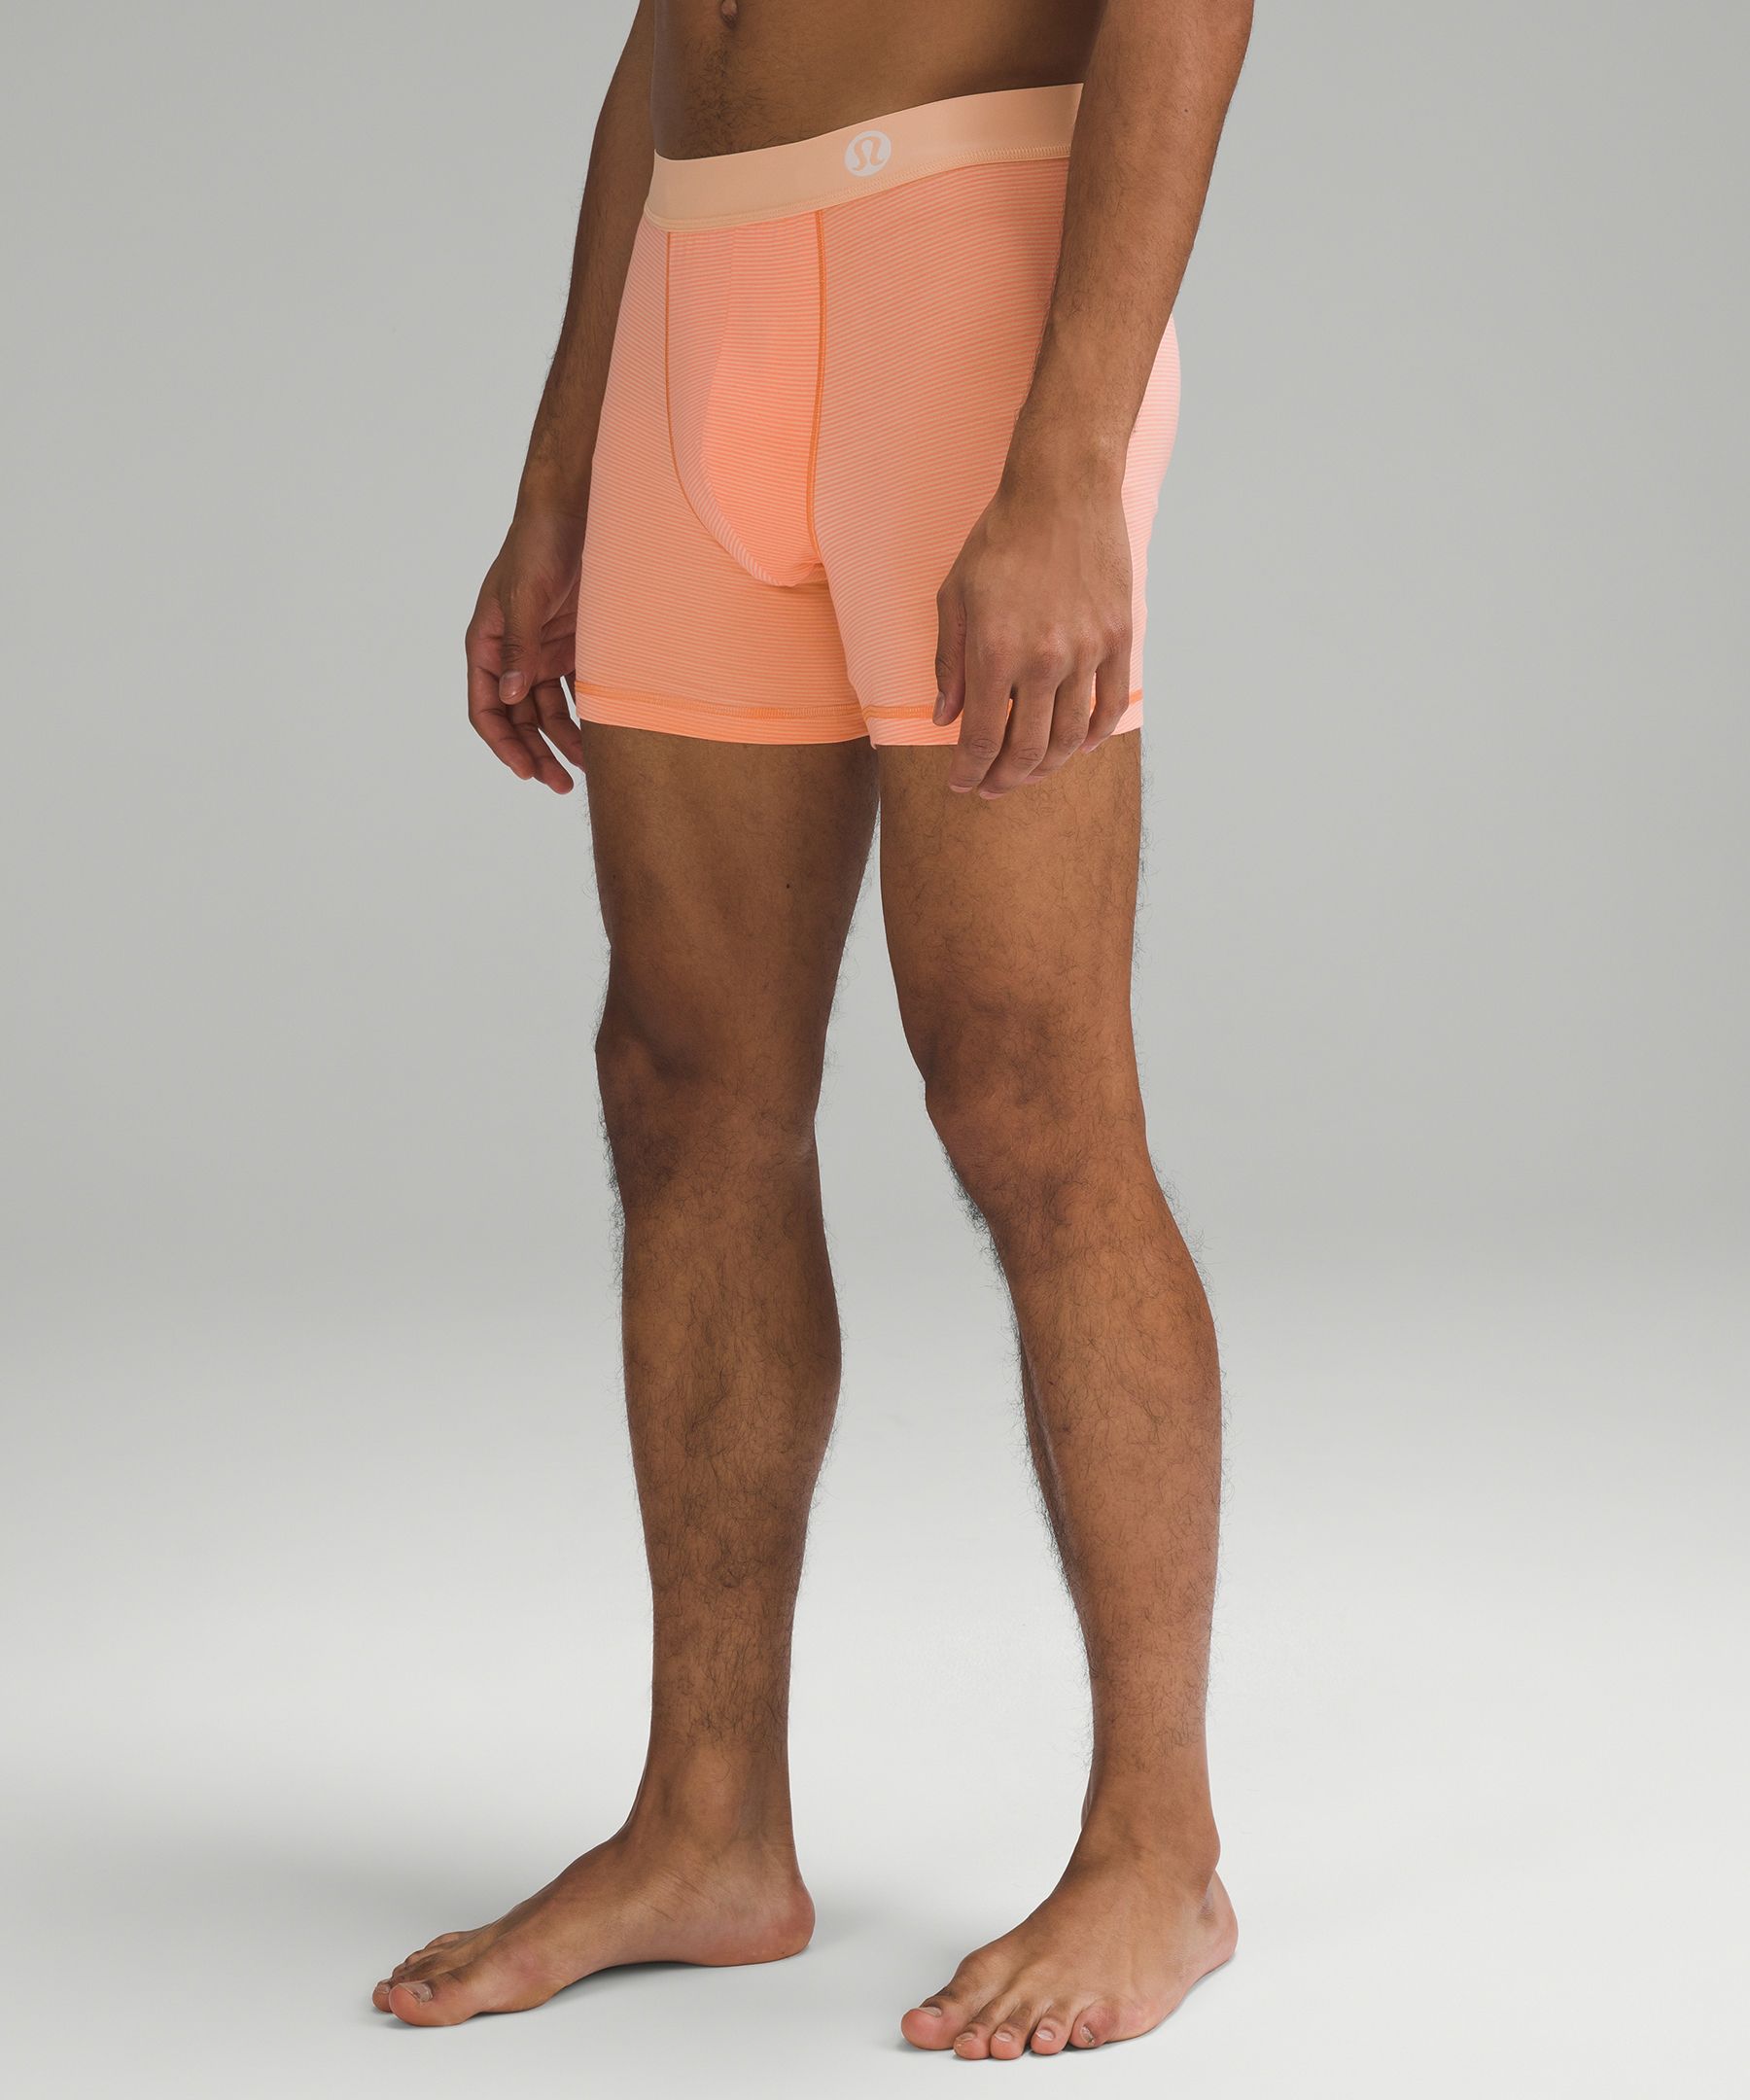 Hanes Originals Boys' Boxer Brief Underwear, Orange & Assorted, 5-Pack